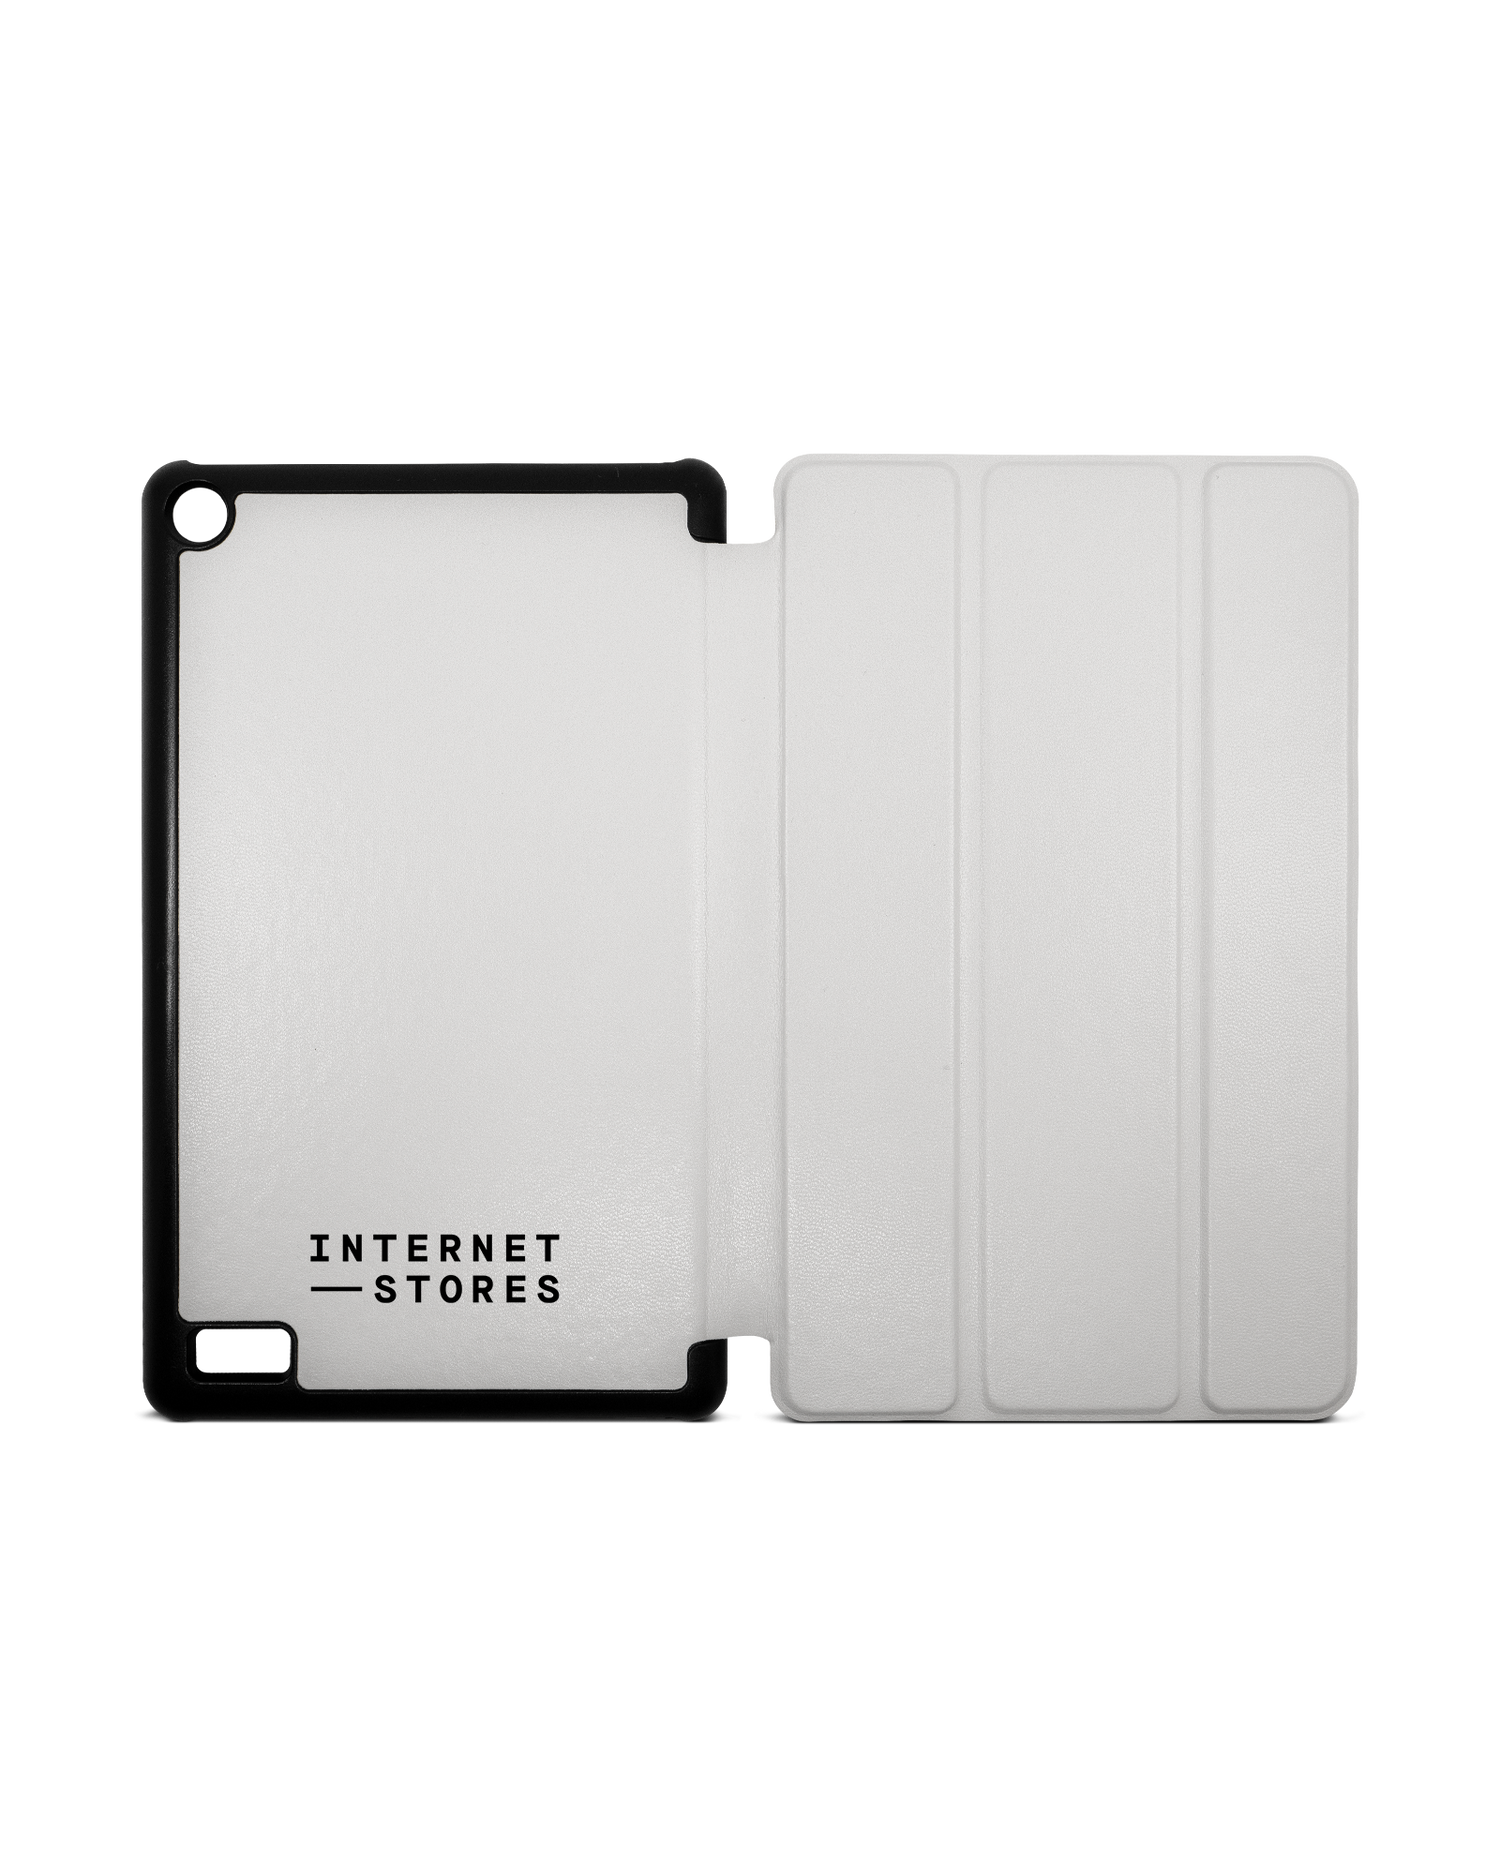 ISG White Tablet Smart Case für Amazon Fire 7: Aufgeklappt